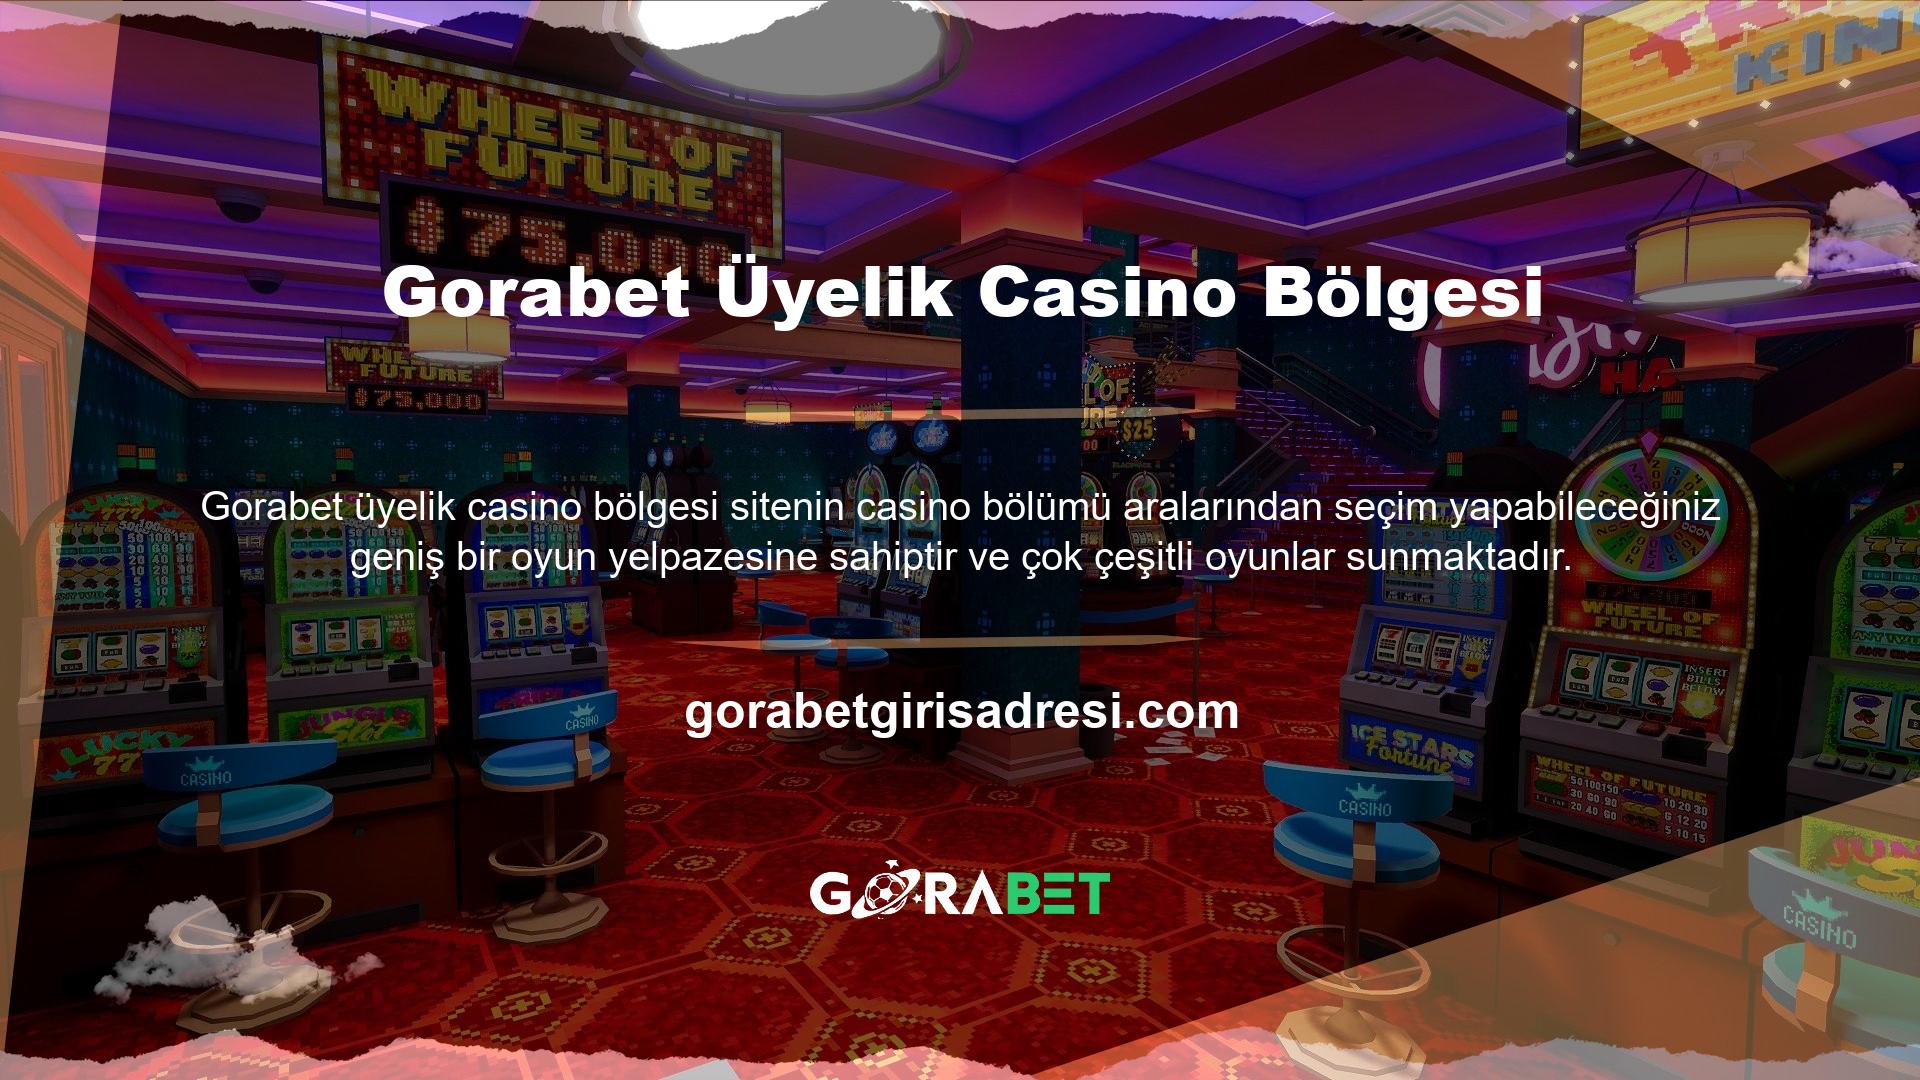 Site, müşteri memnuniyeti odaklı olarak online casino veya canlı casino seçenekleri sunmaktadır